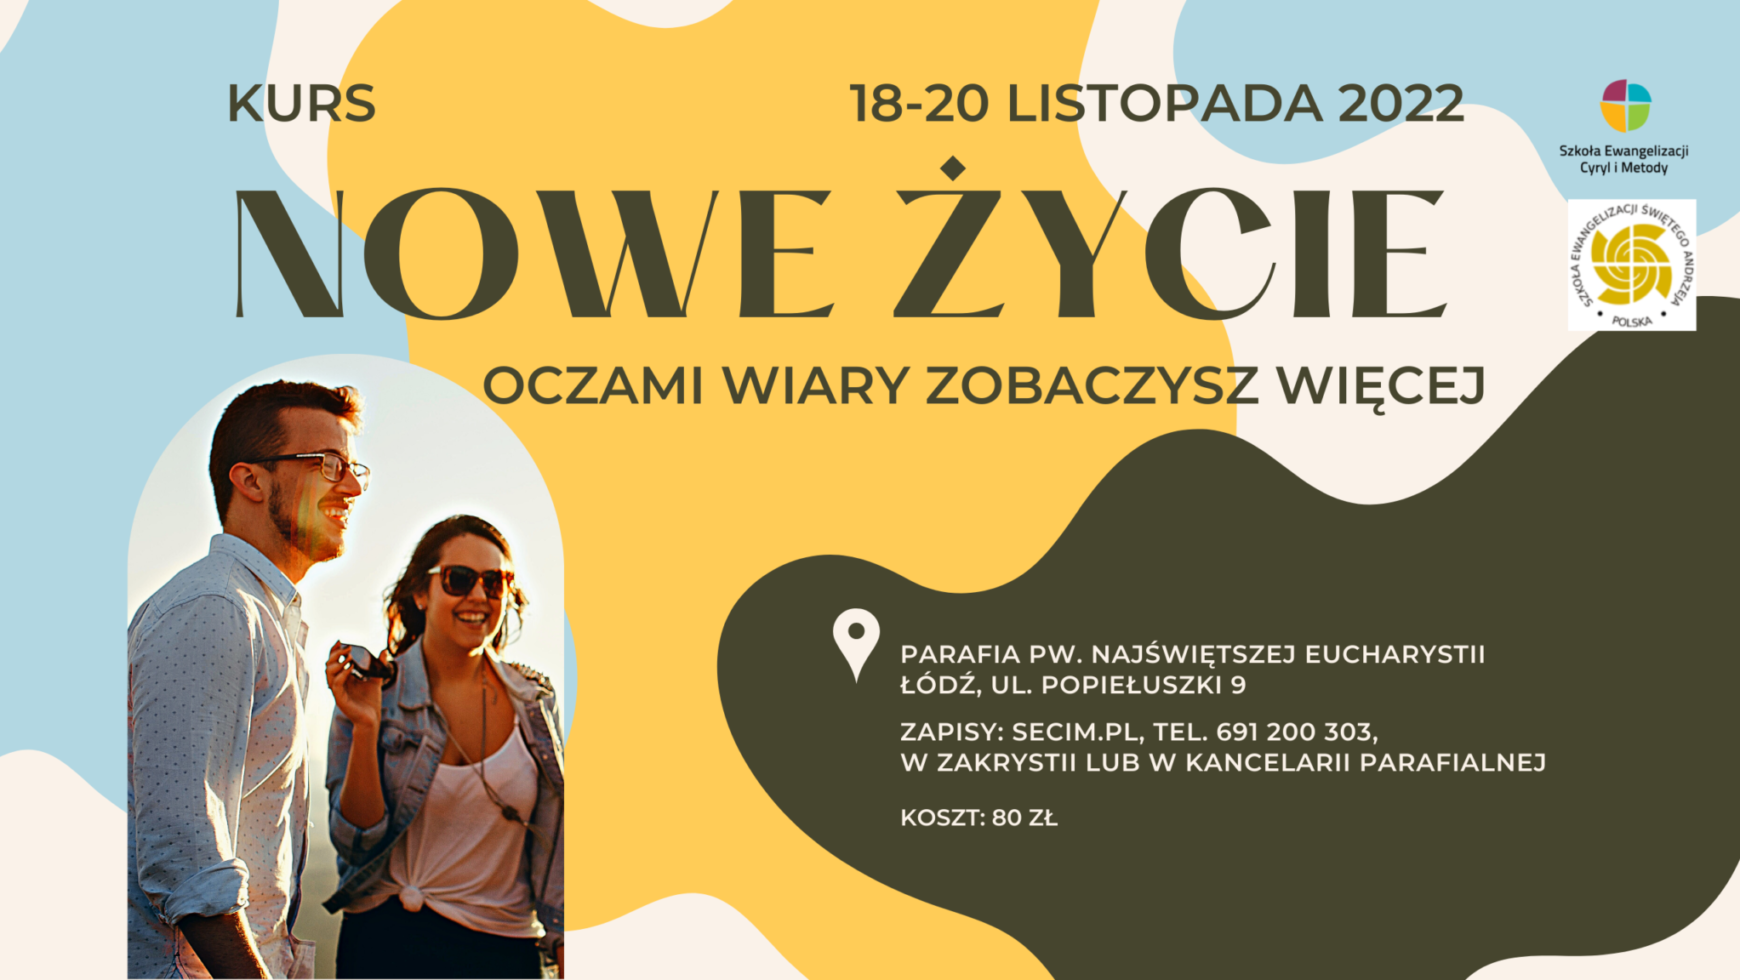 Kurs Nowe Życie, Łódź 18-20 listopada